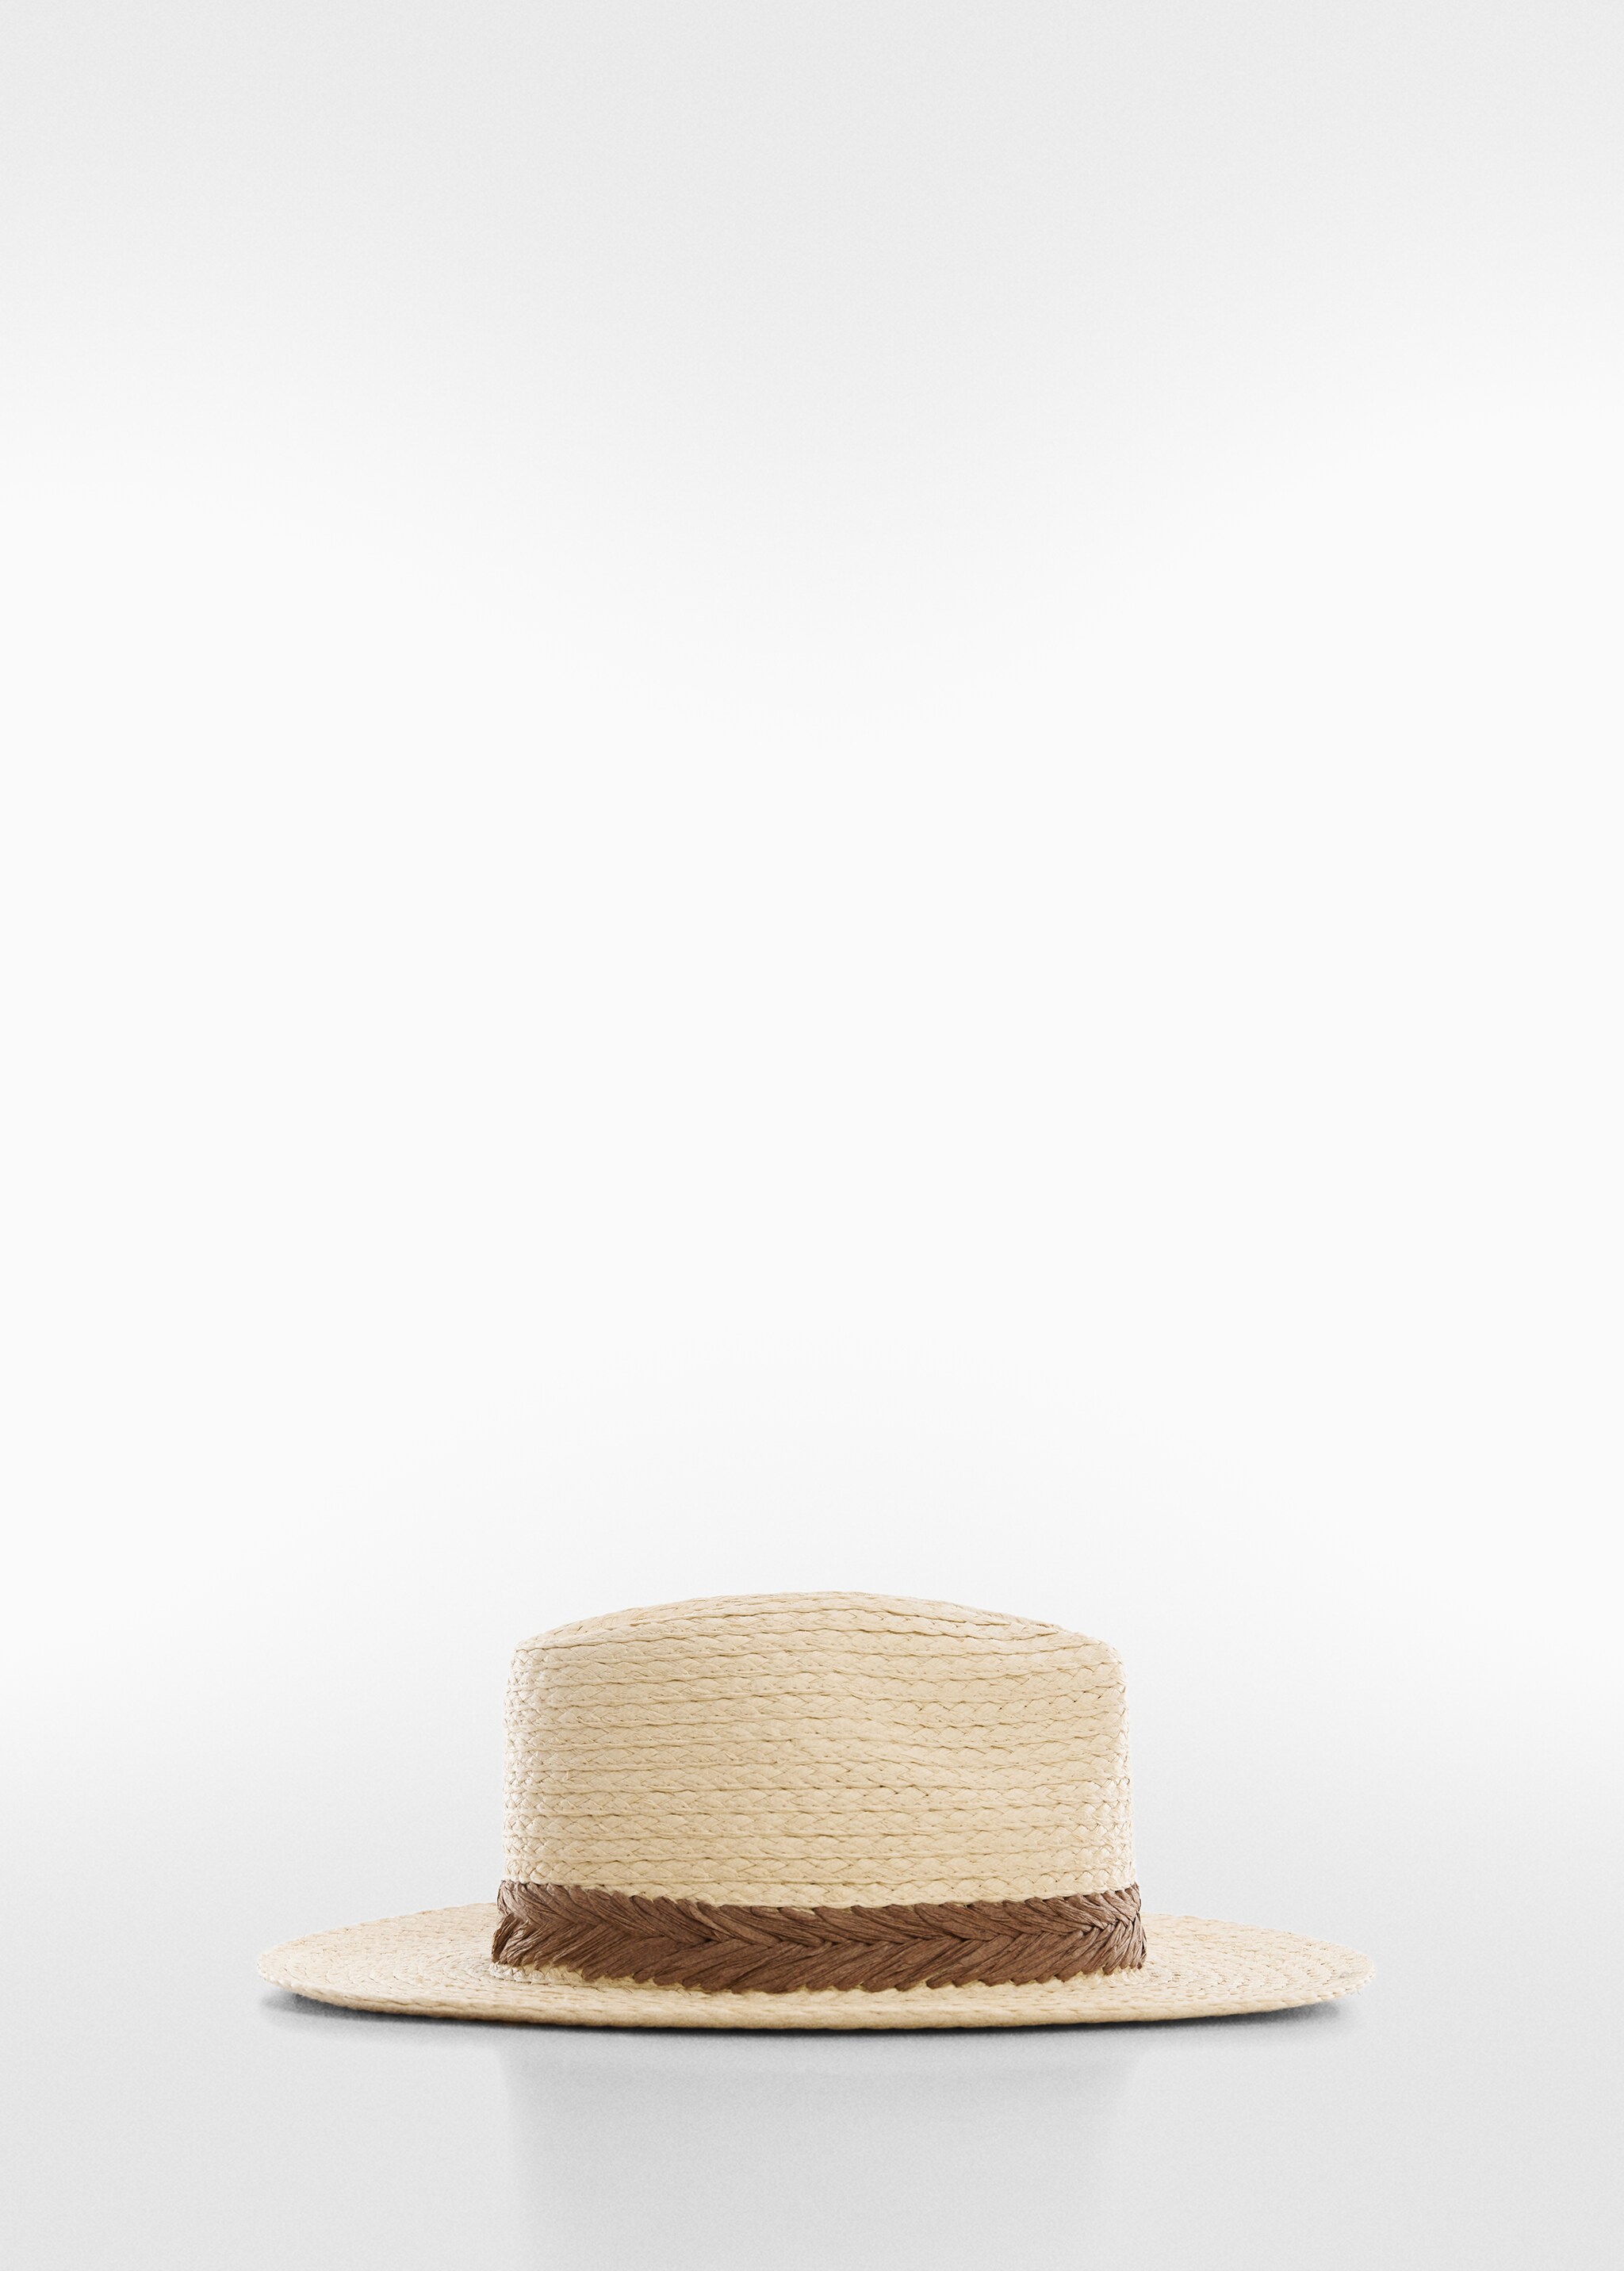 Плетеная шляпа с лентой - Изделие без модели